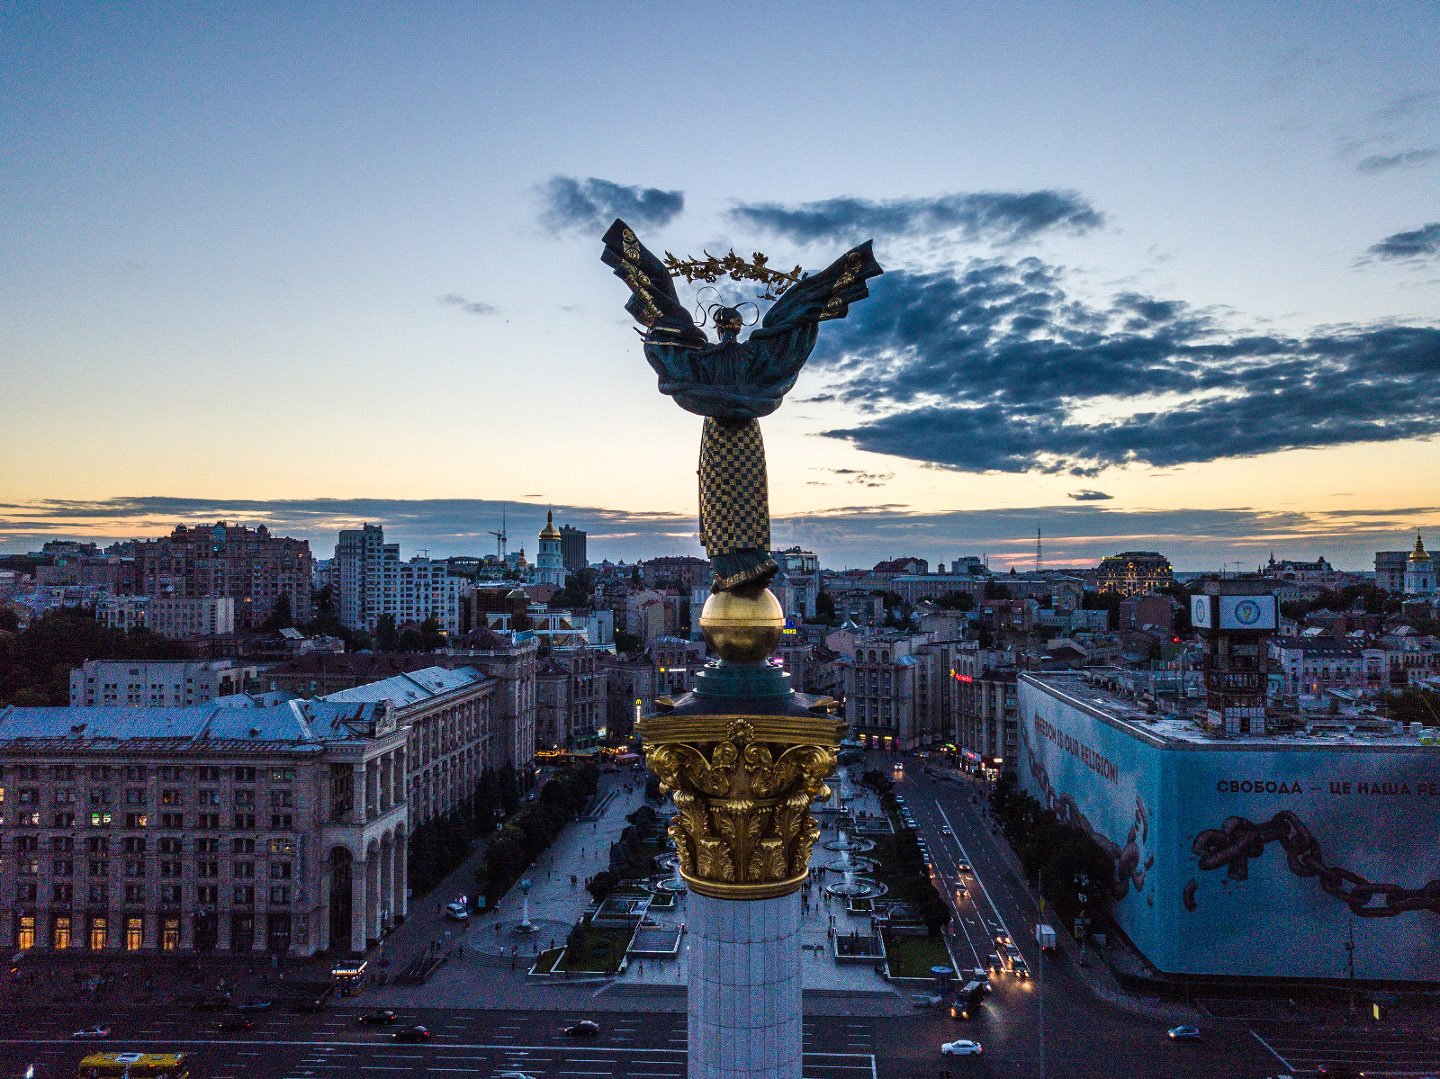 Победа дипломатии: Википедия будет писать “Kyiv” вместо “Kiev”